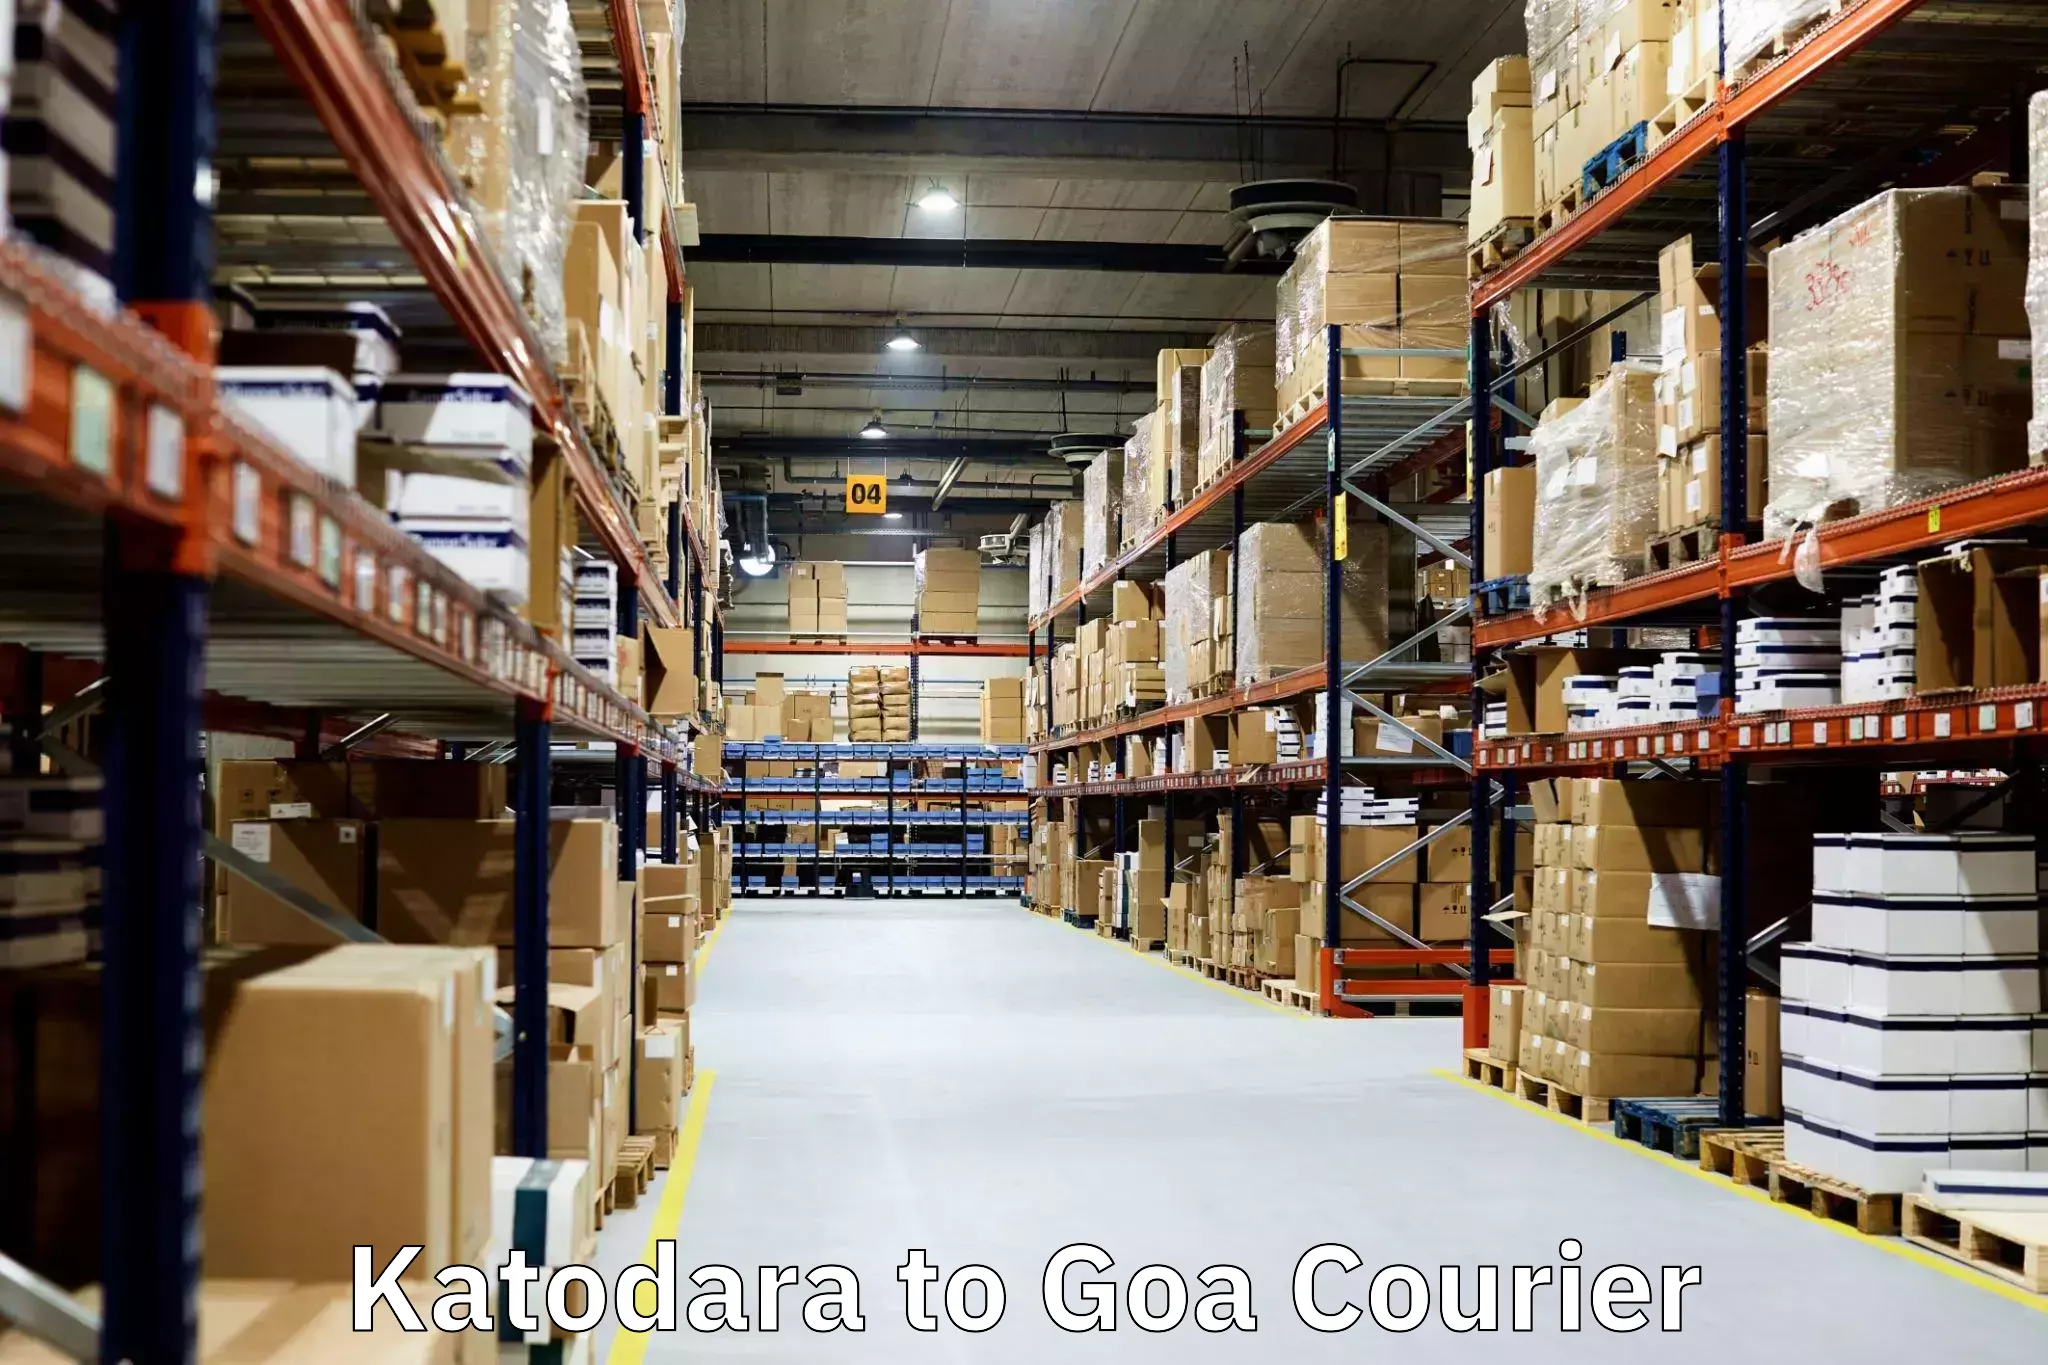 High-quality moving services Katodara to Goa